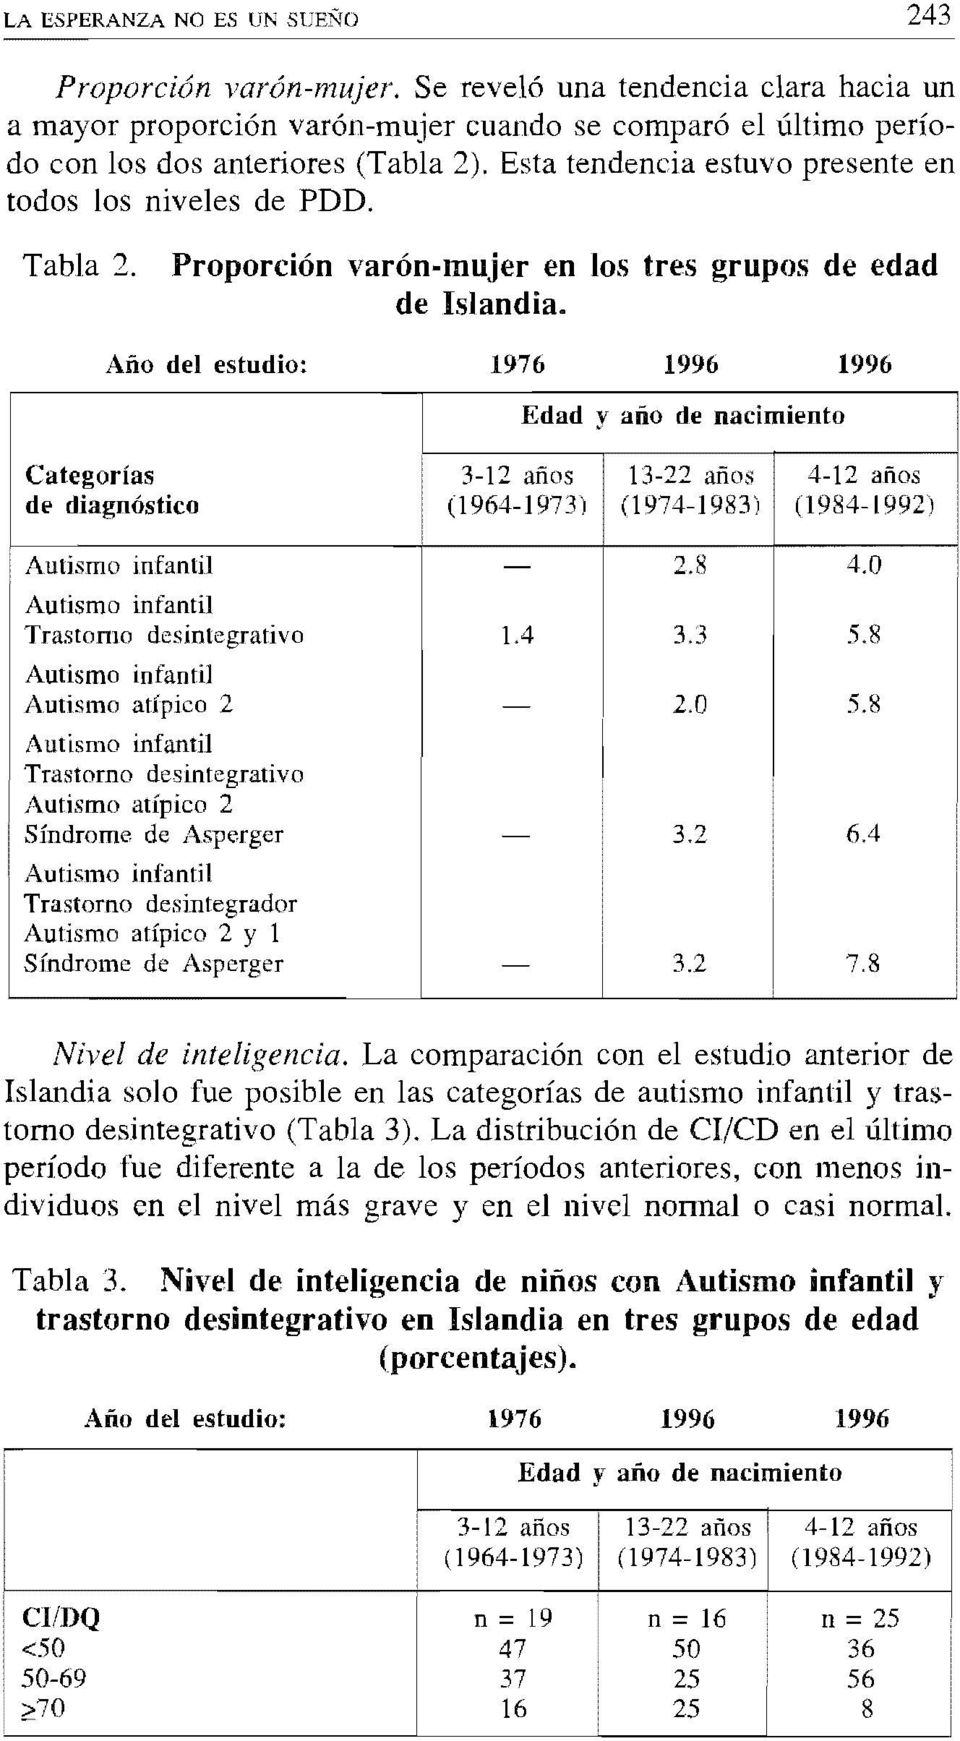 La comparación con el estudio anterior de Islandia solo fue posible en las categorías de autismo infantil y trastorno desintegrativo (Tabla 3).